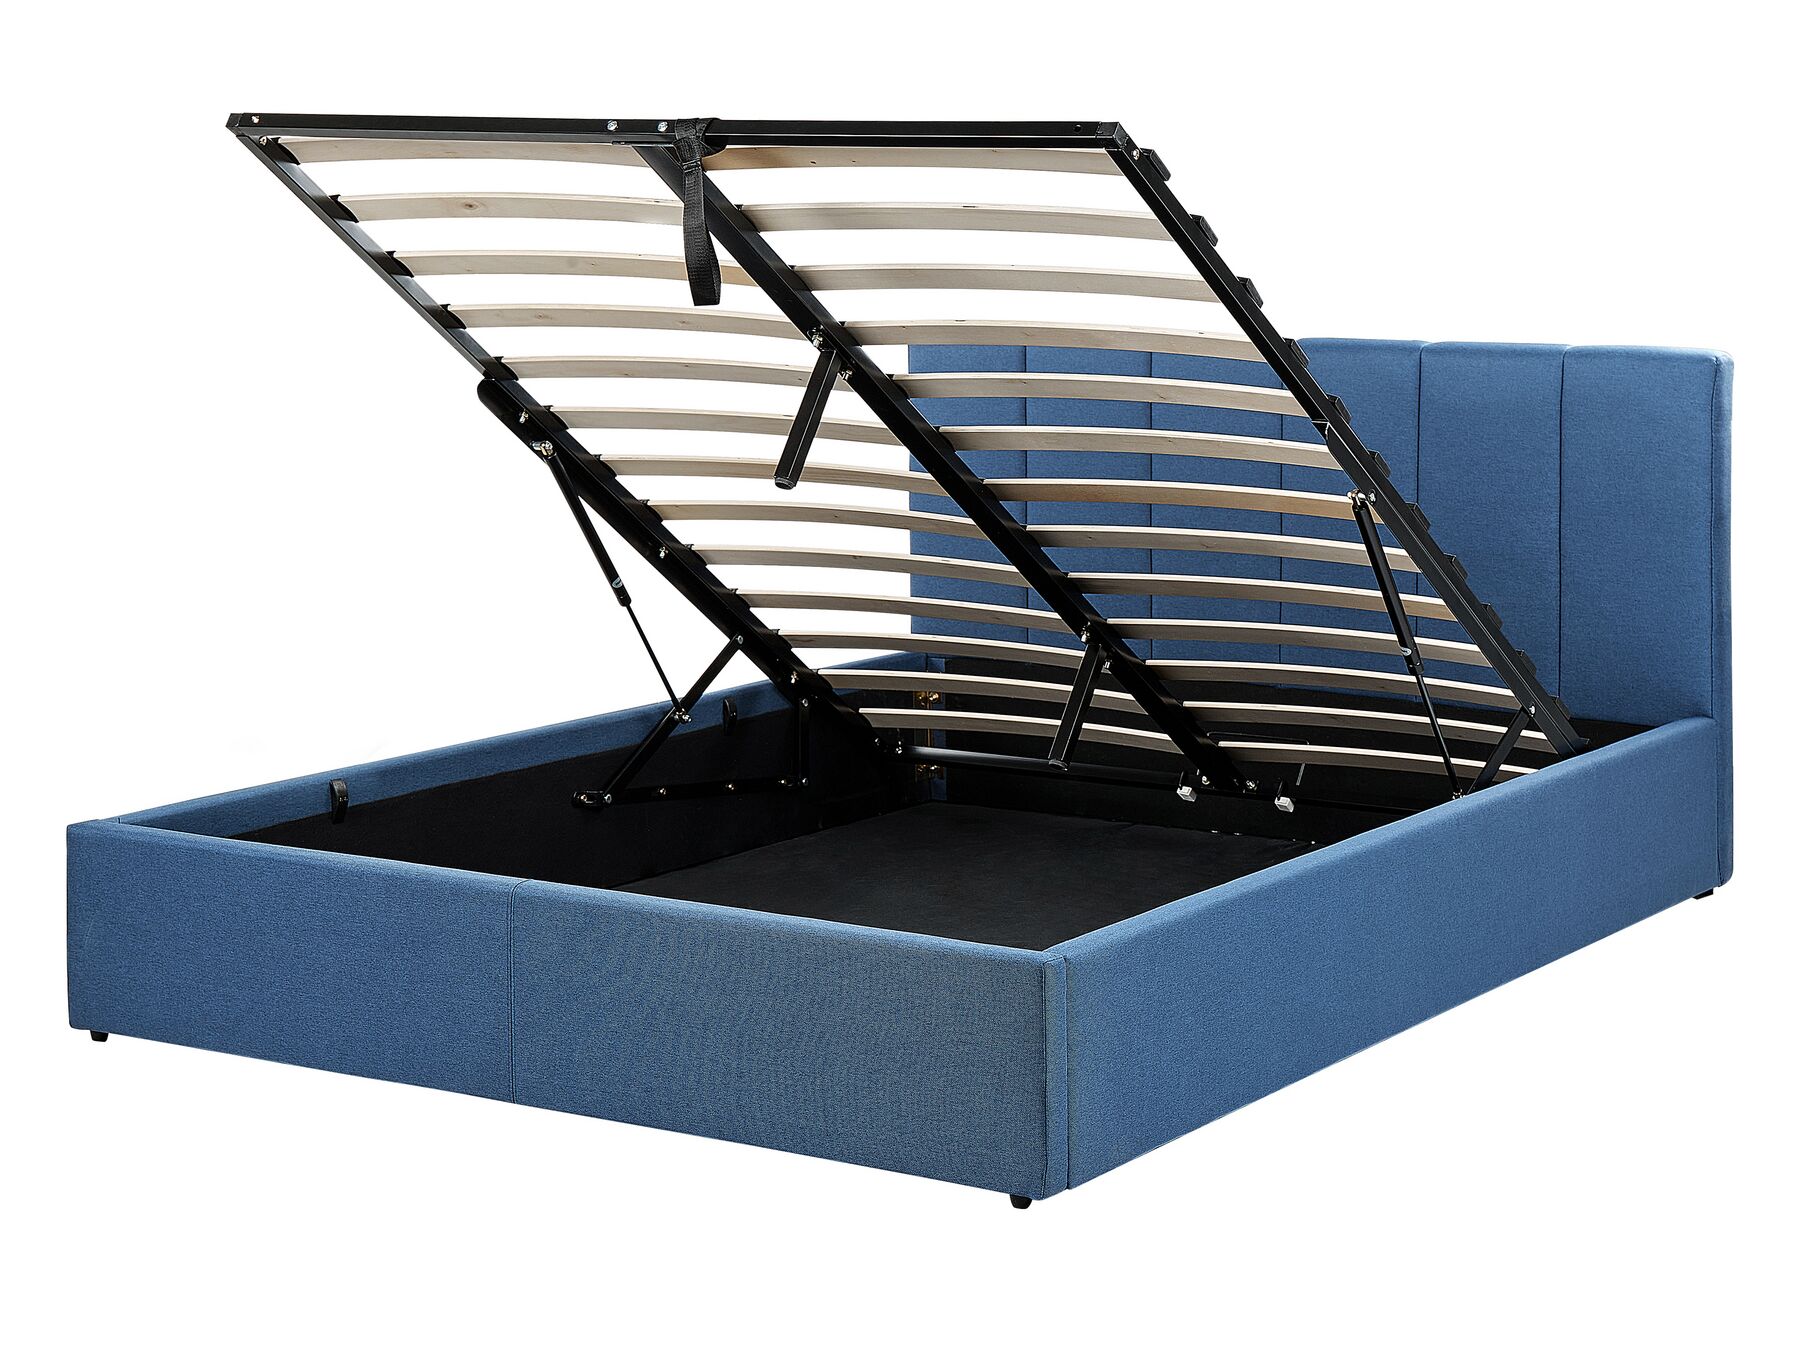 Čalouněná postel s úložným prostorem 140 x 200 cm modrá DREUX_861059